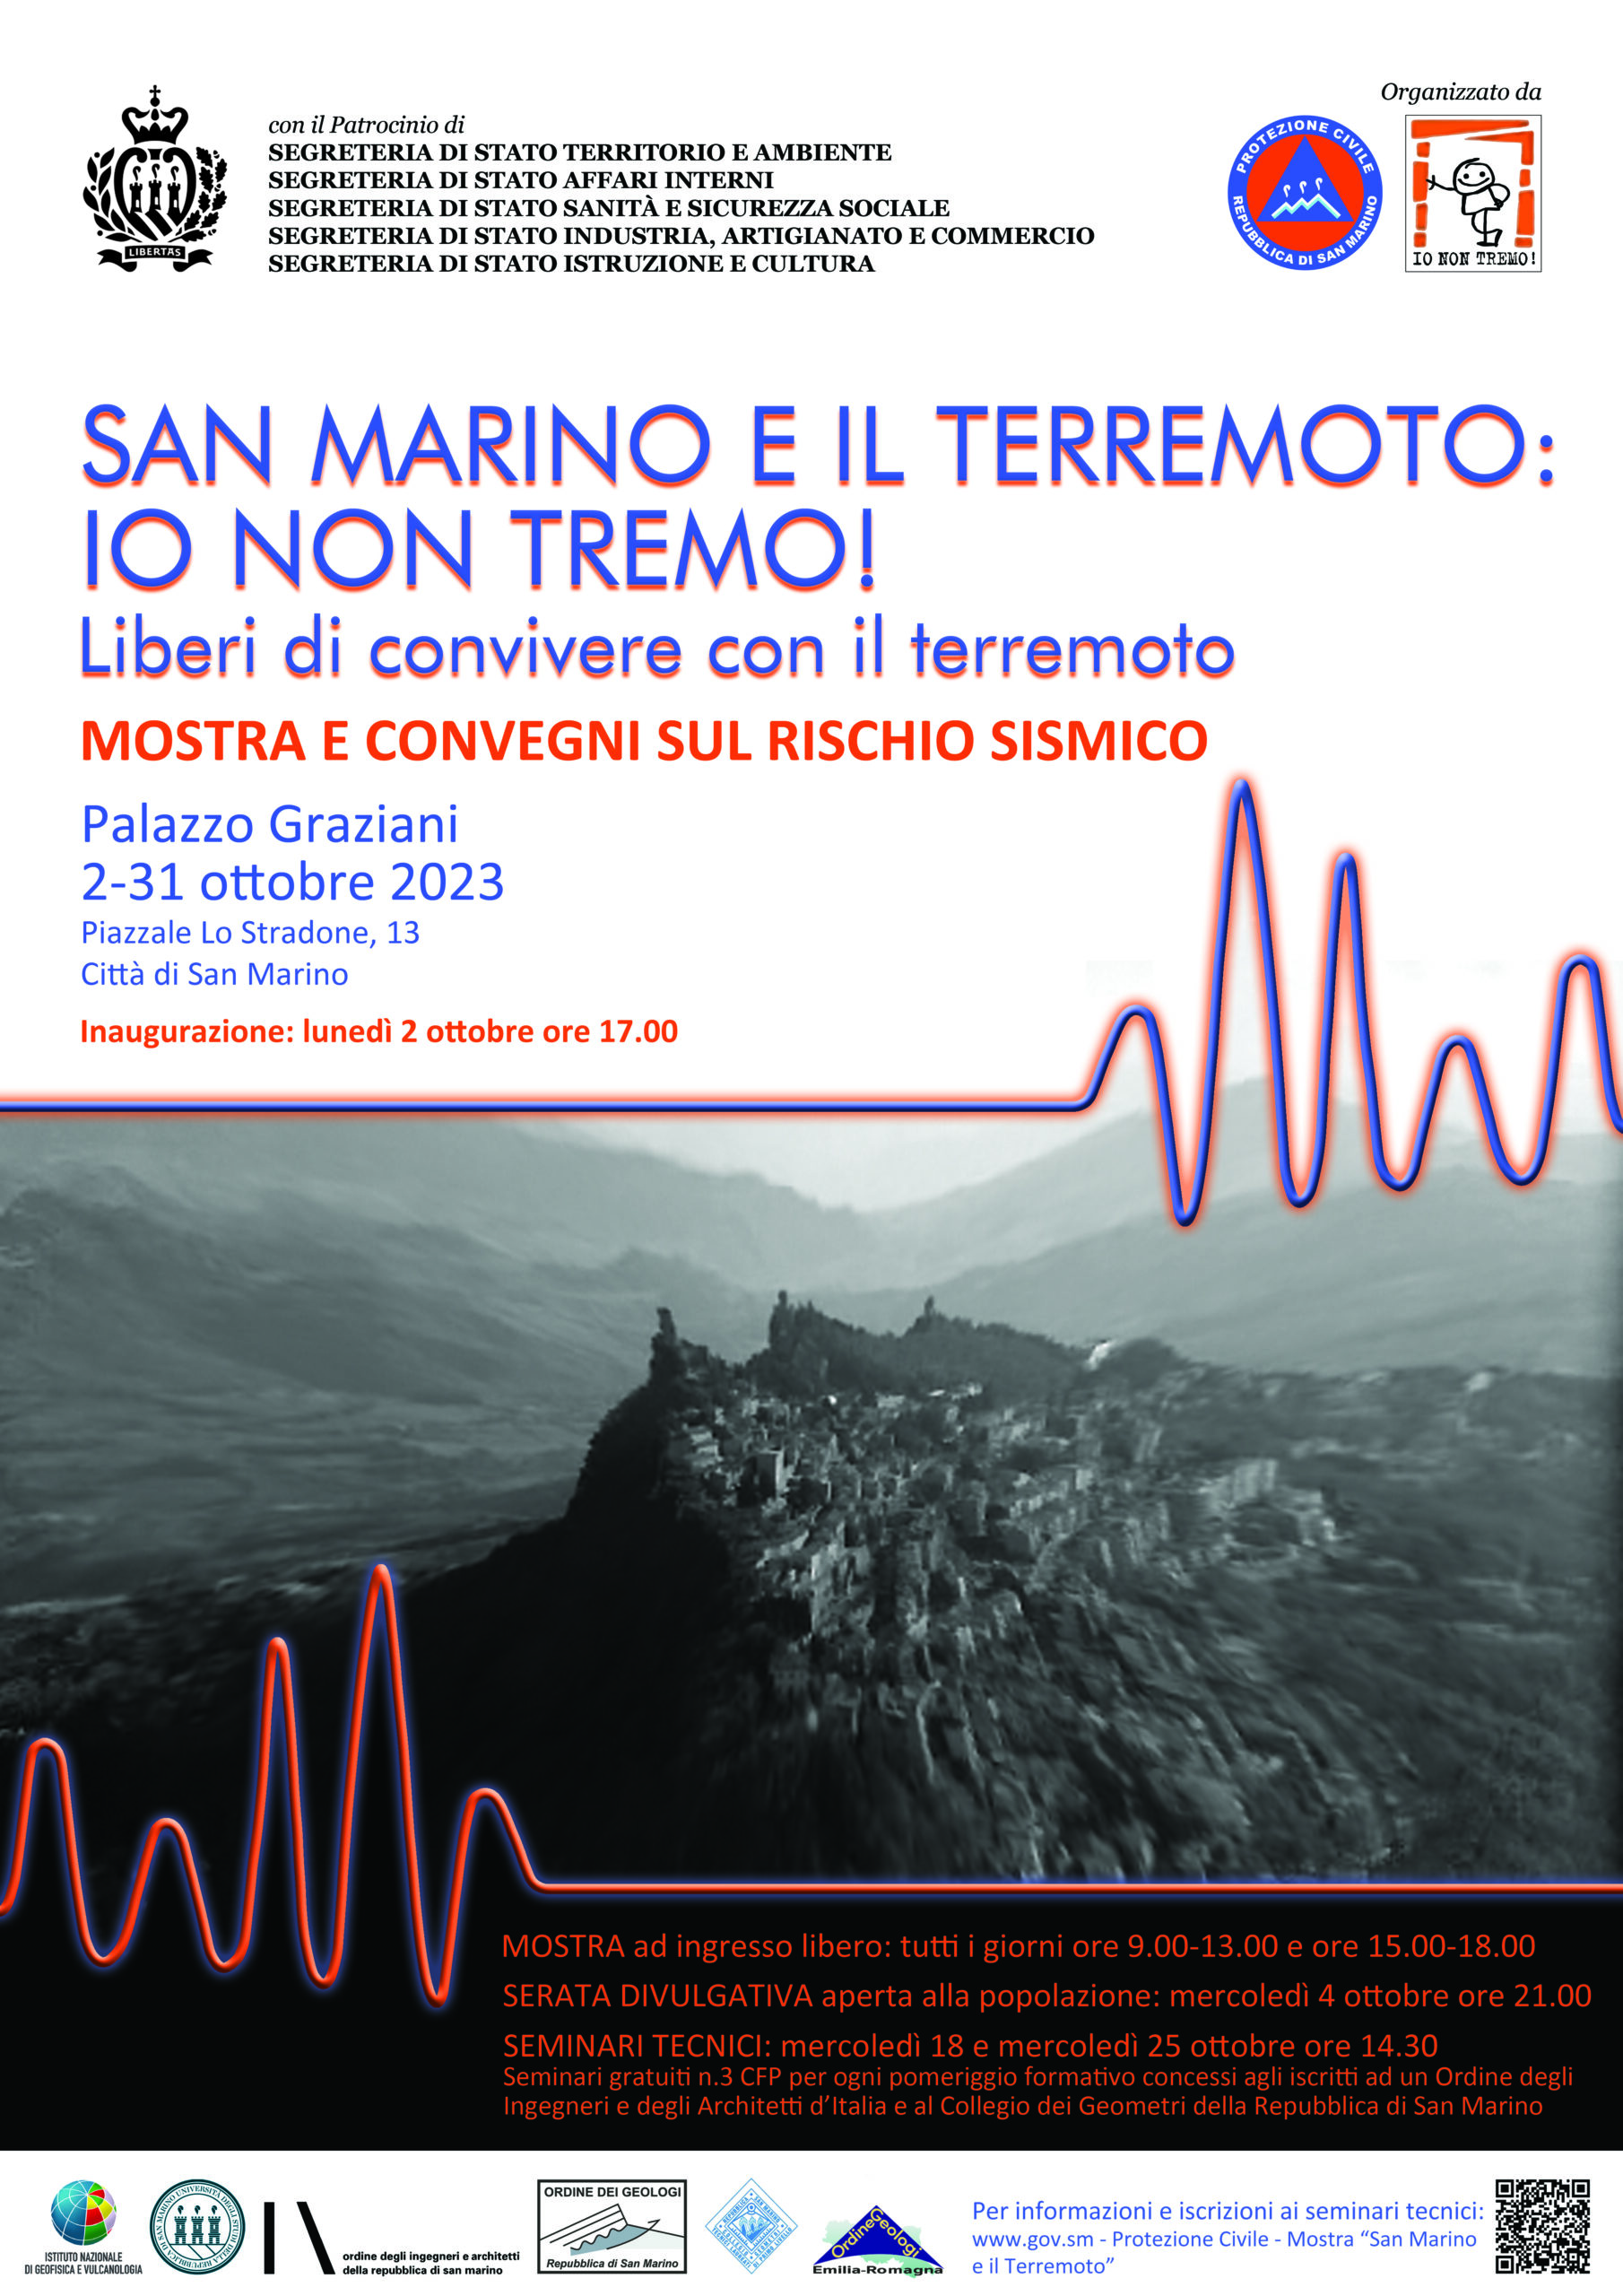 Il terremoto in mostra a San Marino